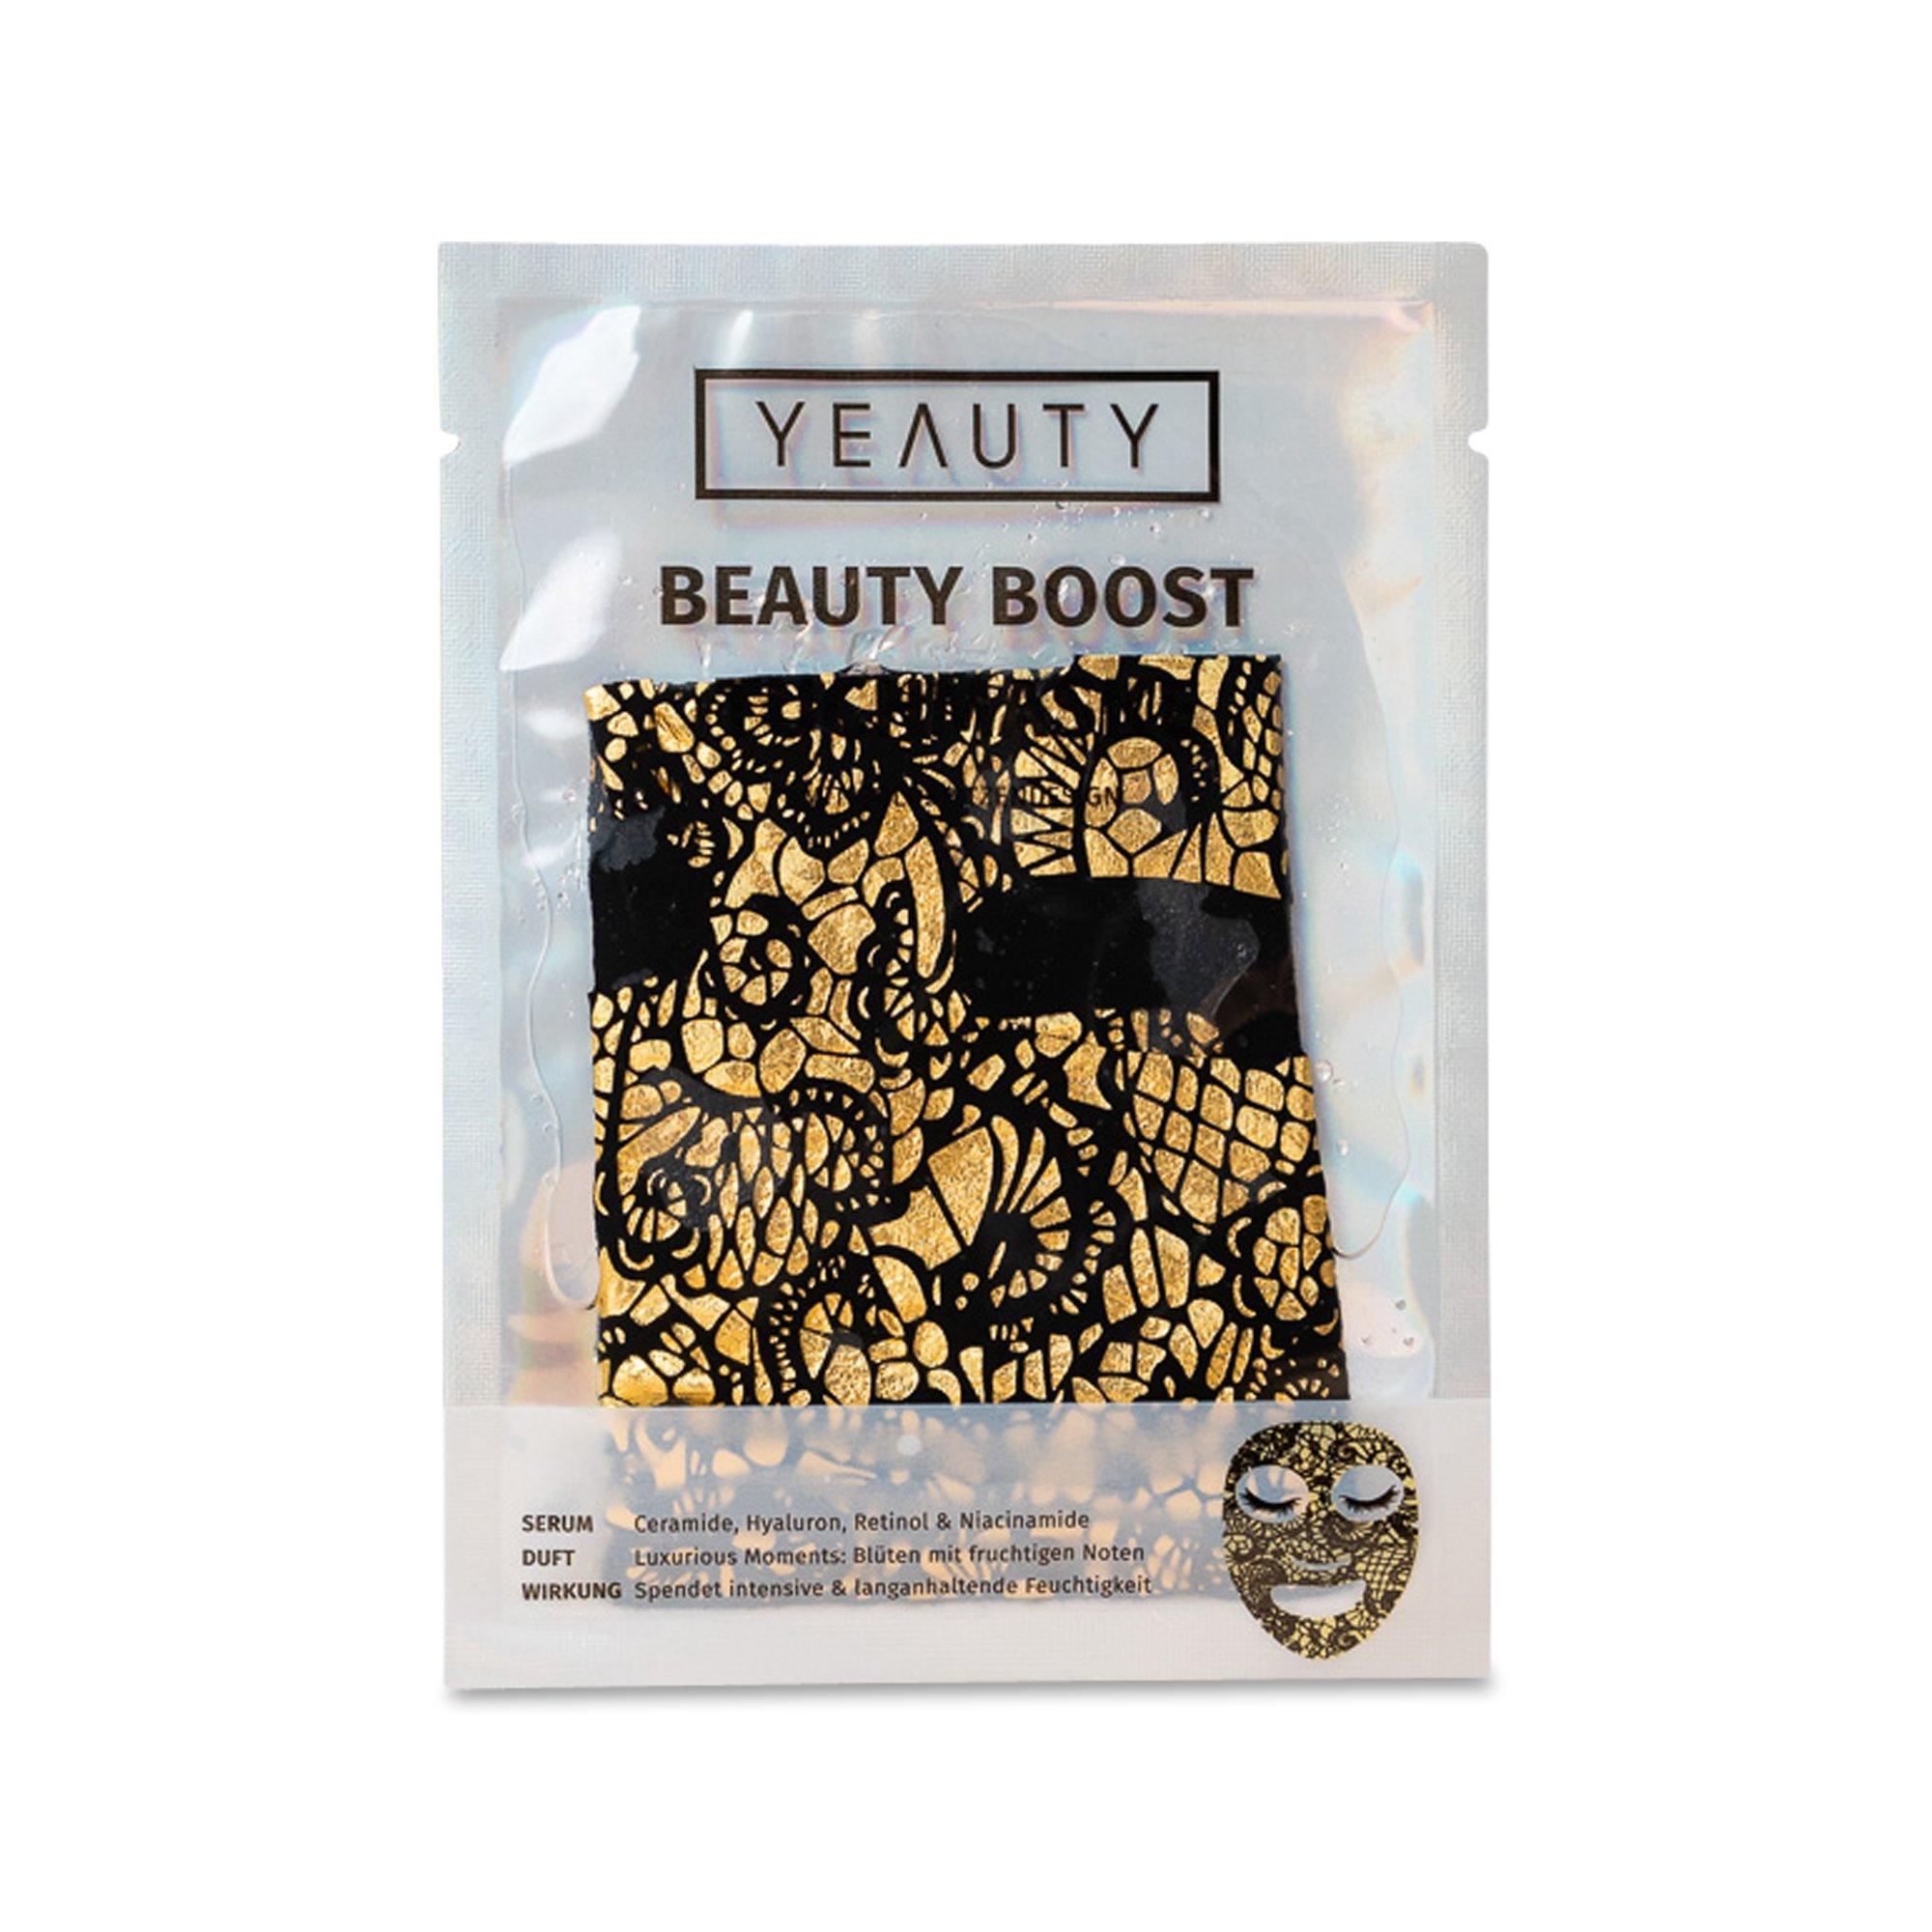 YEAUTY Beauty Boost Sheet Mask Beauty Boost 